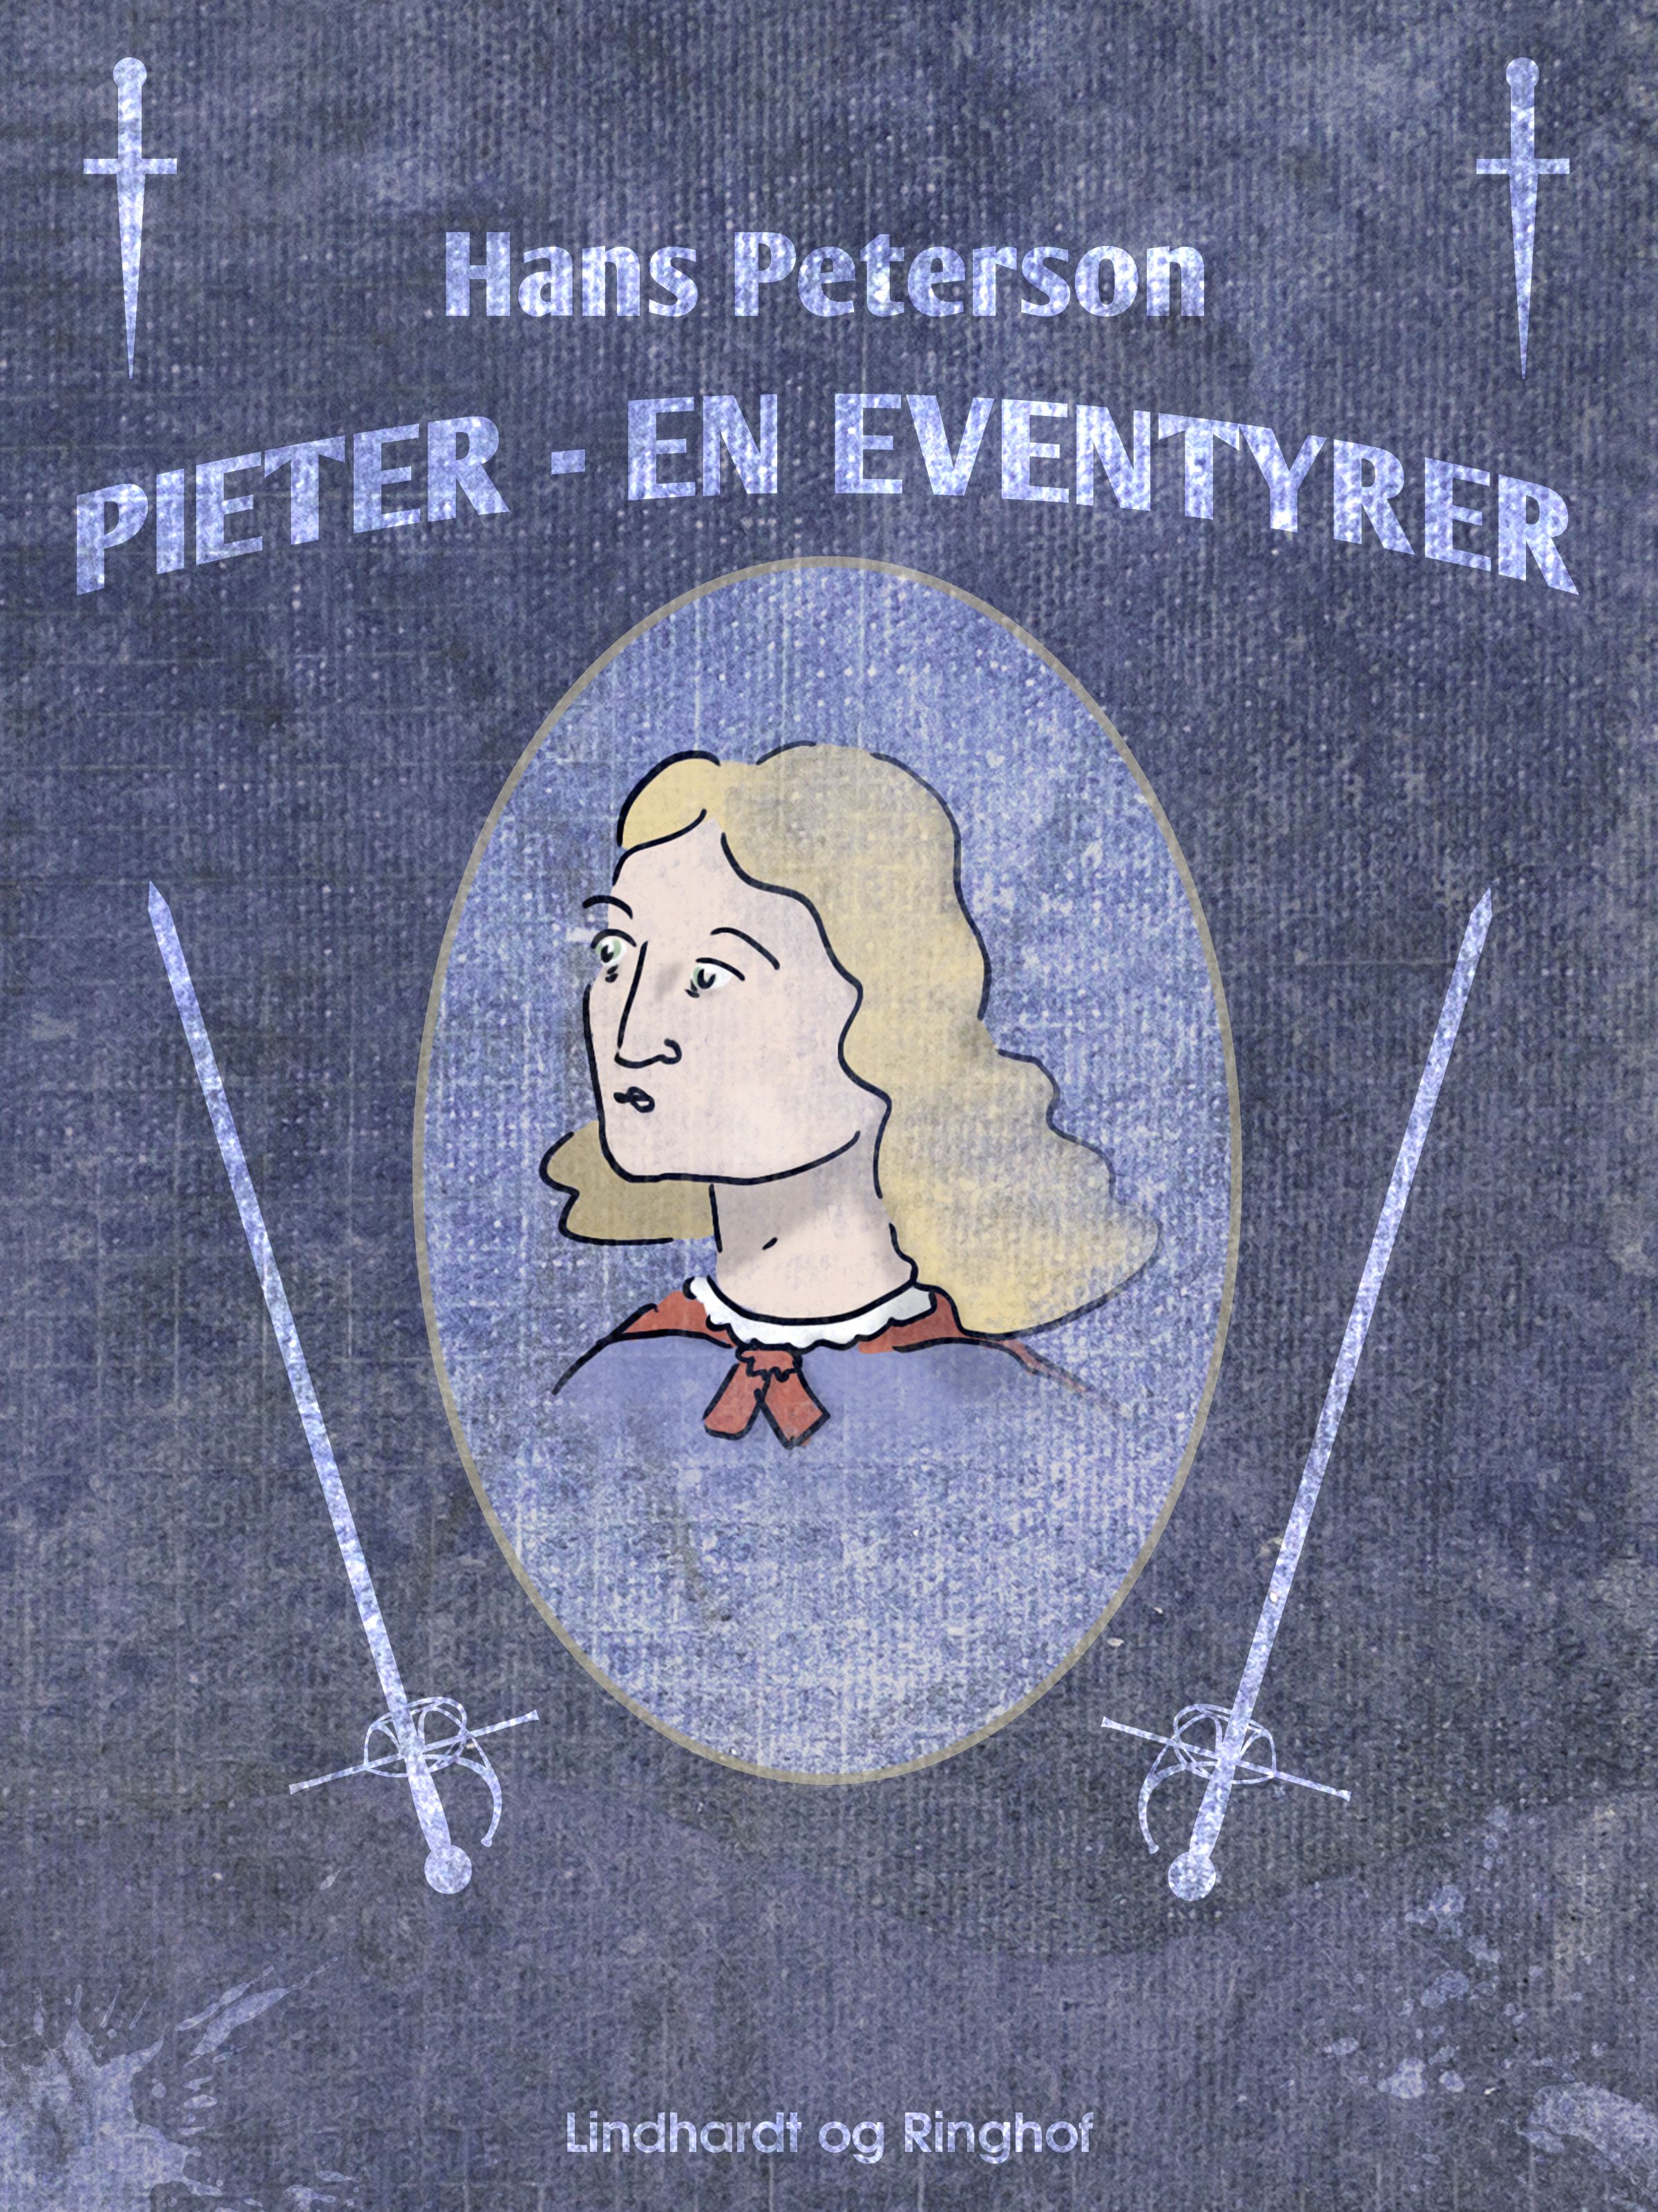 Pieter - en eventyrer, lydbog af Hans Peterson